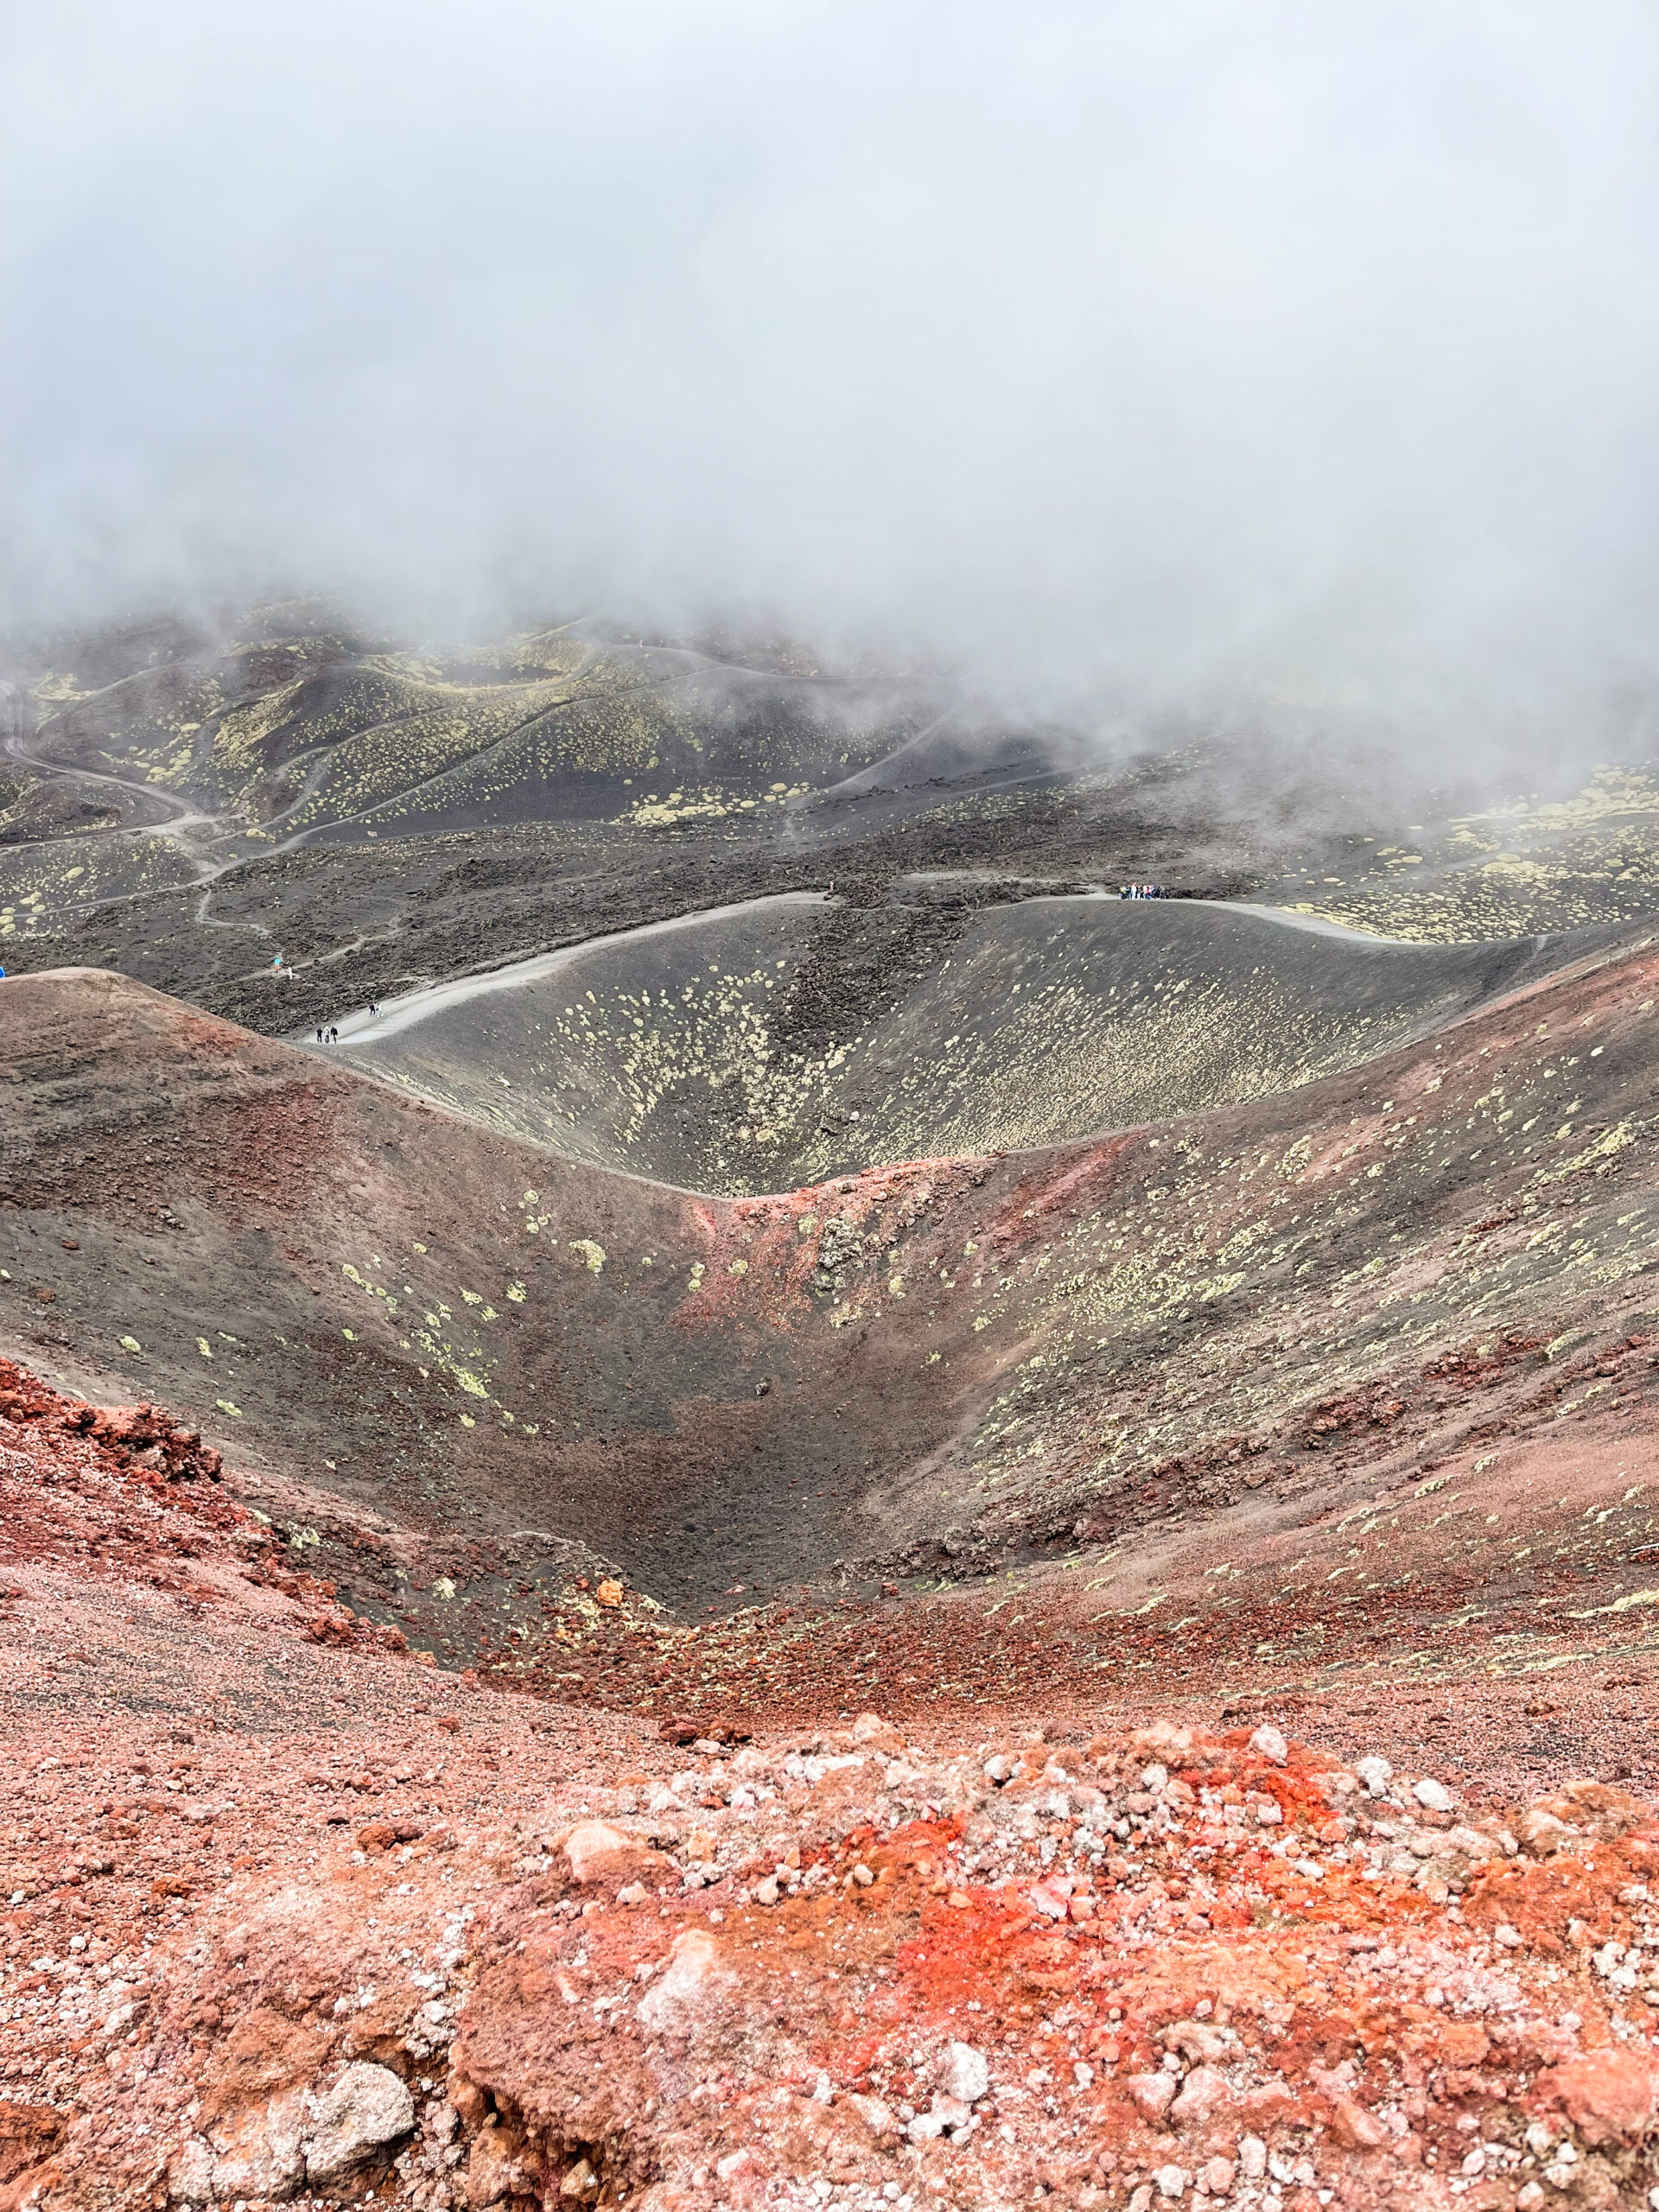 Excursión al Etna: una aventura fascinante entre mitos, naturaleza y fuerza volcánica